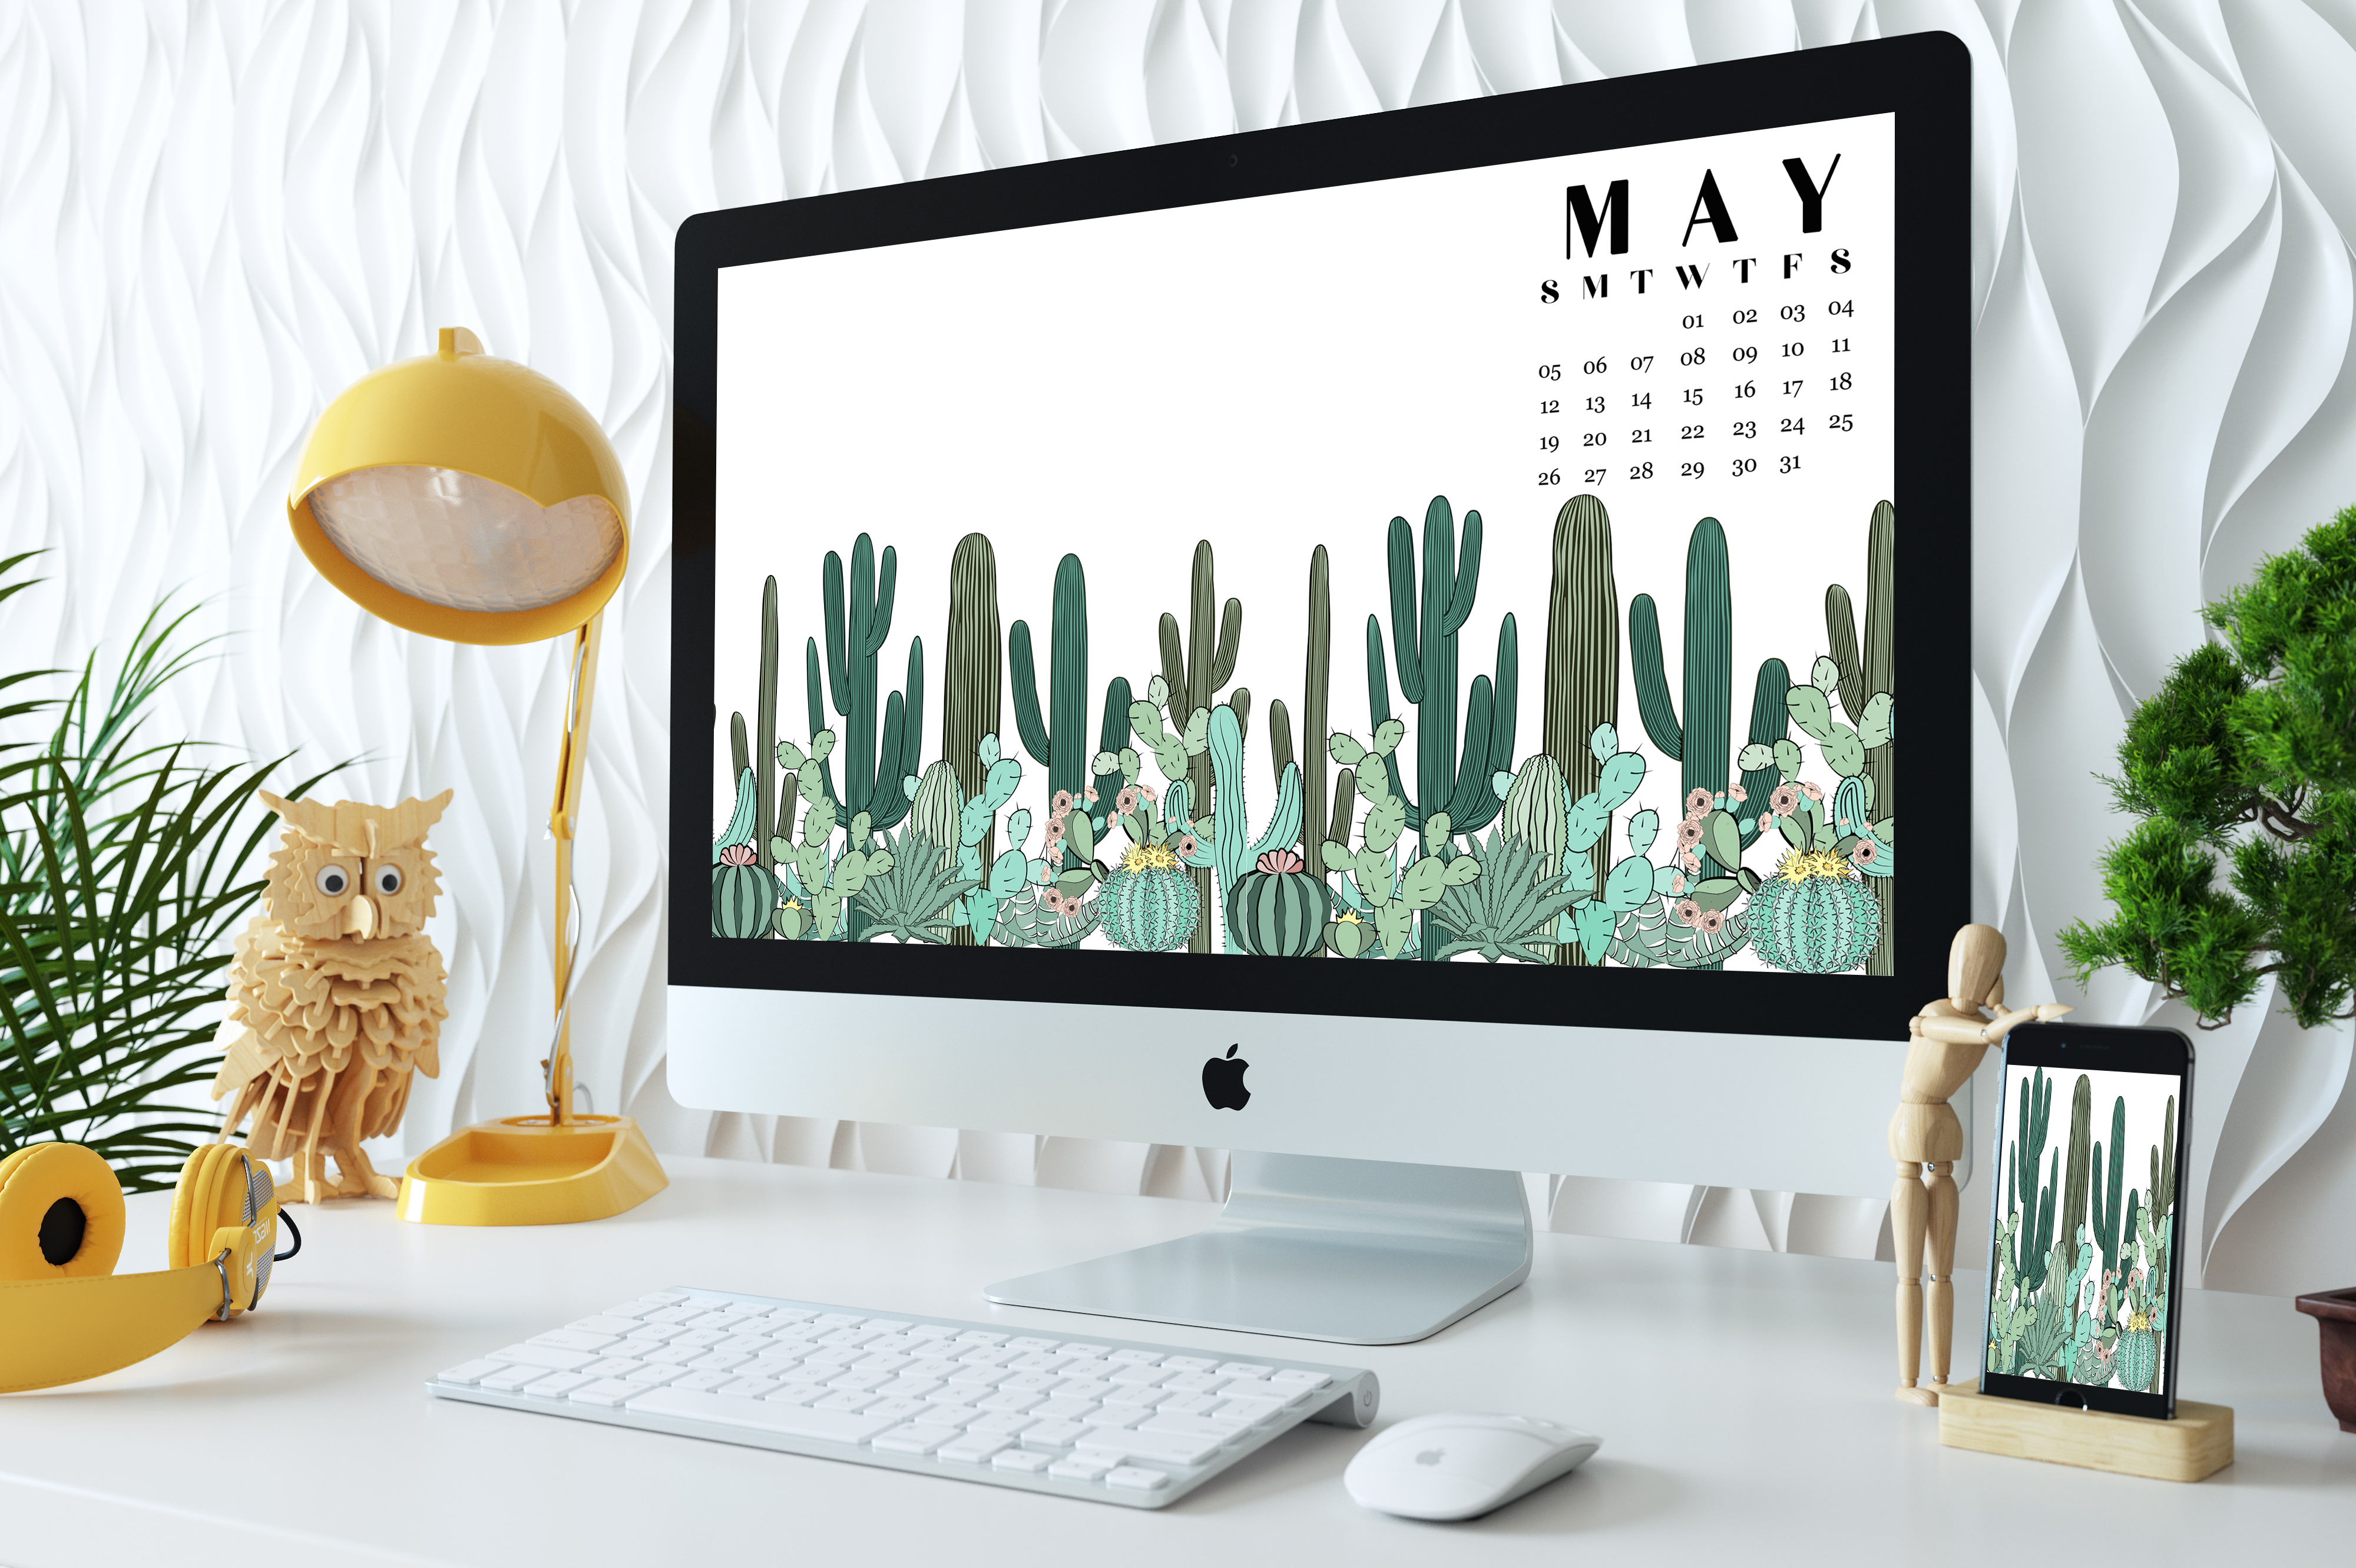 Free Downloadable Desktop Wallpapers For May - May 2019 Desktop - HD Wallpaper 